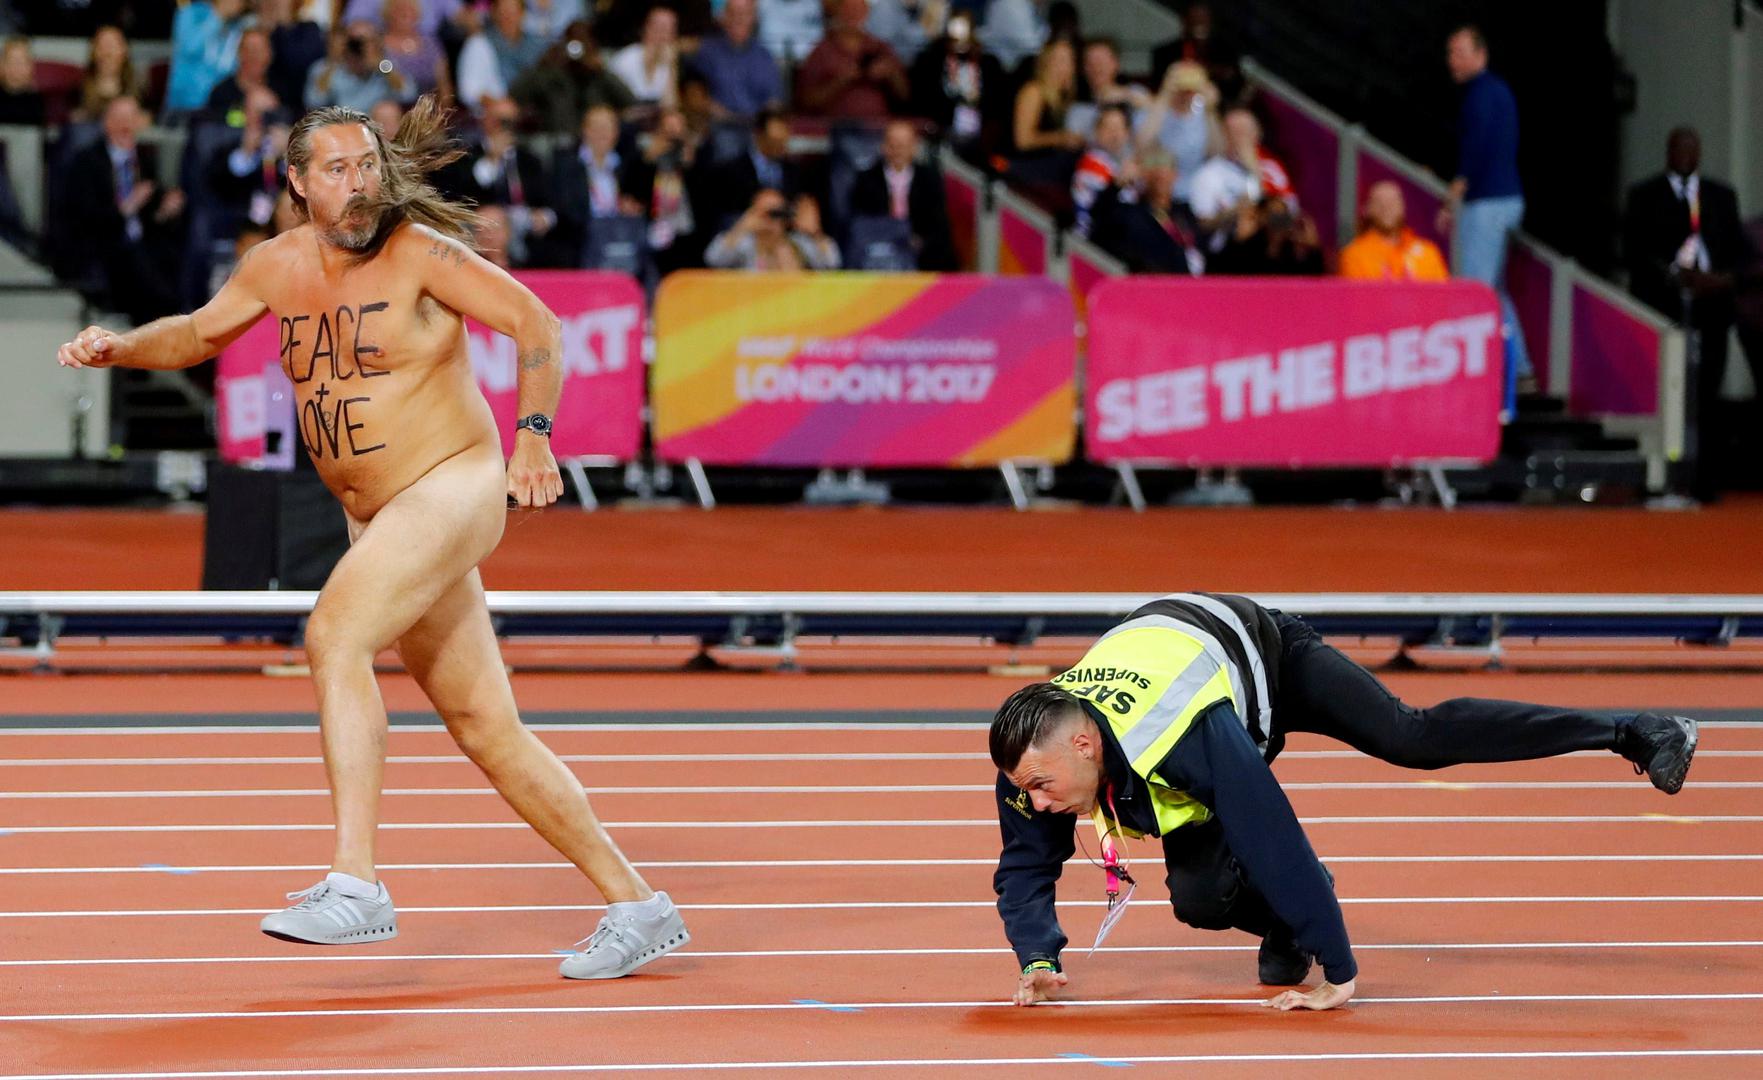 I dok su svi očekivali posljednji veliki nastup Usaina Bolta, fizički dobro potkovani streaker s napisanom porukom "Peace + Love" na golim prsima odsprintao je punih 50 metara uoči finala utrke na 100 metara na svjetskom atletskom prvenstvu u Londonu.